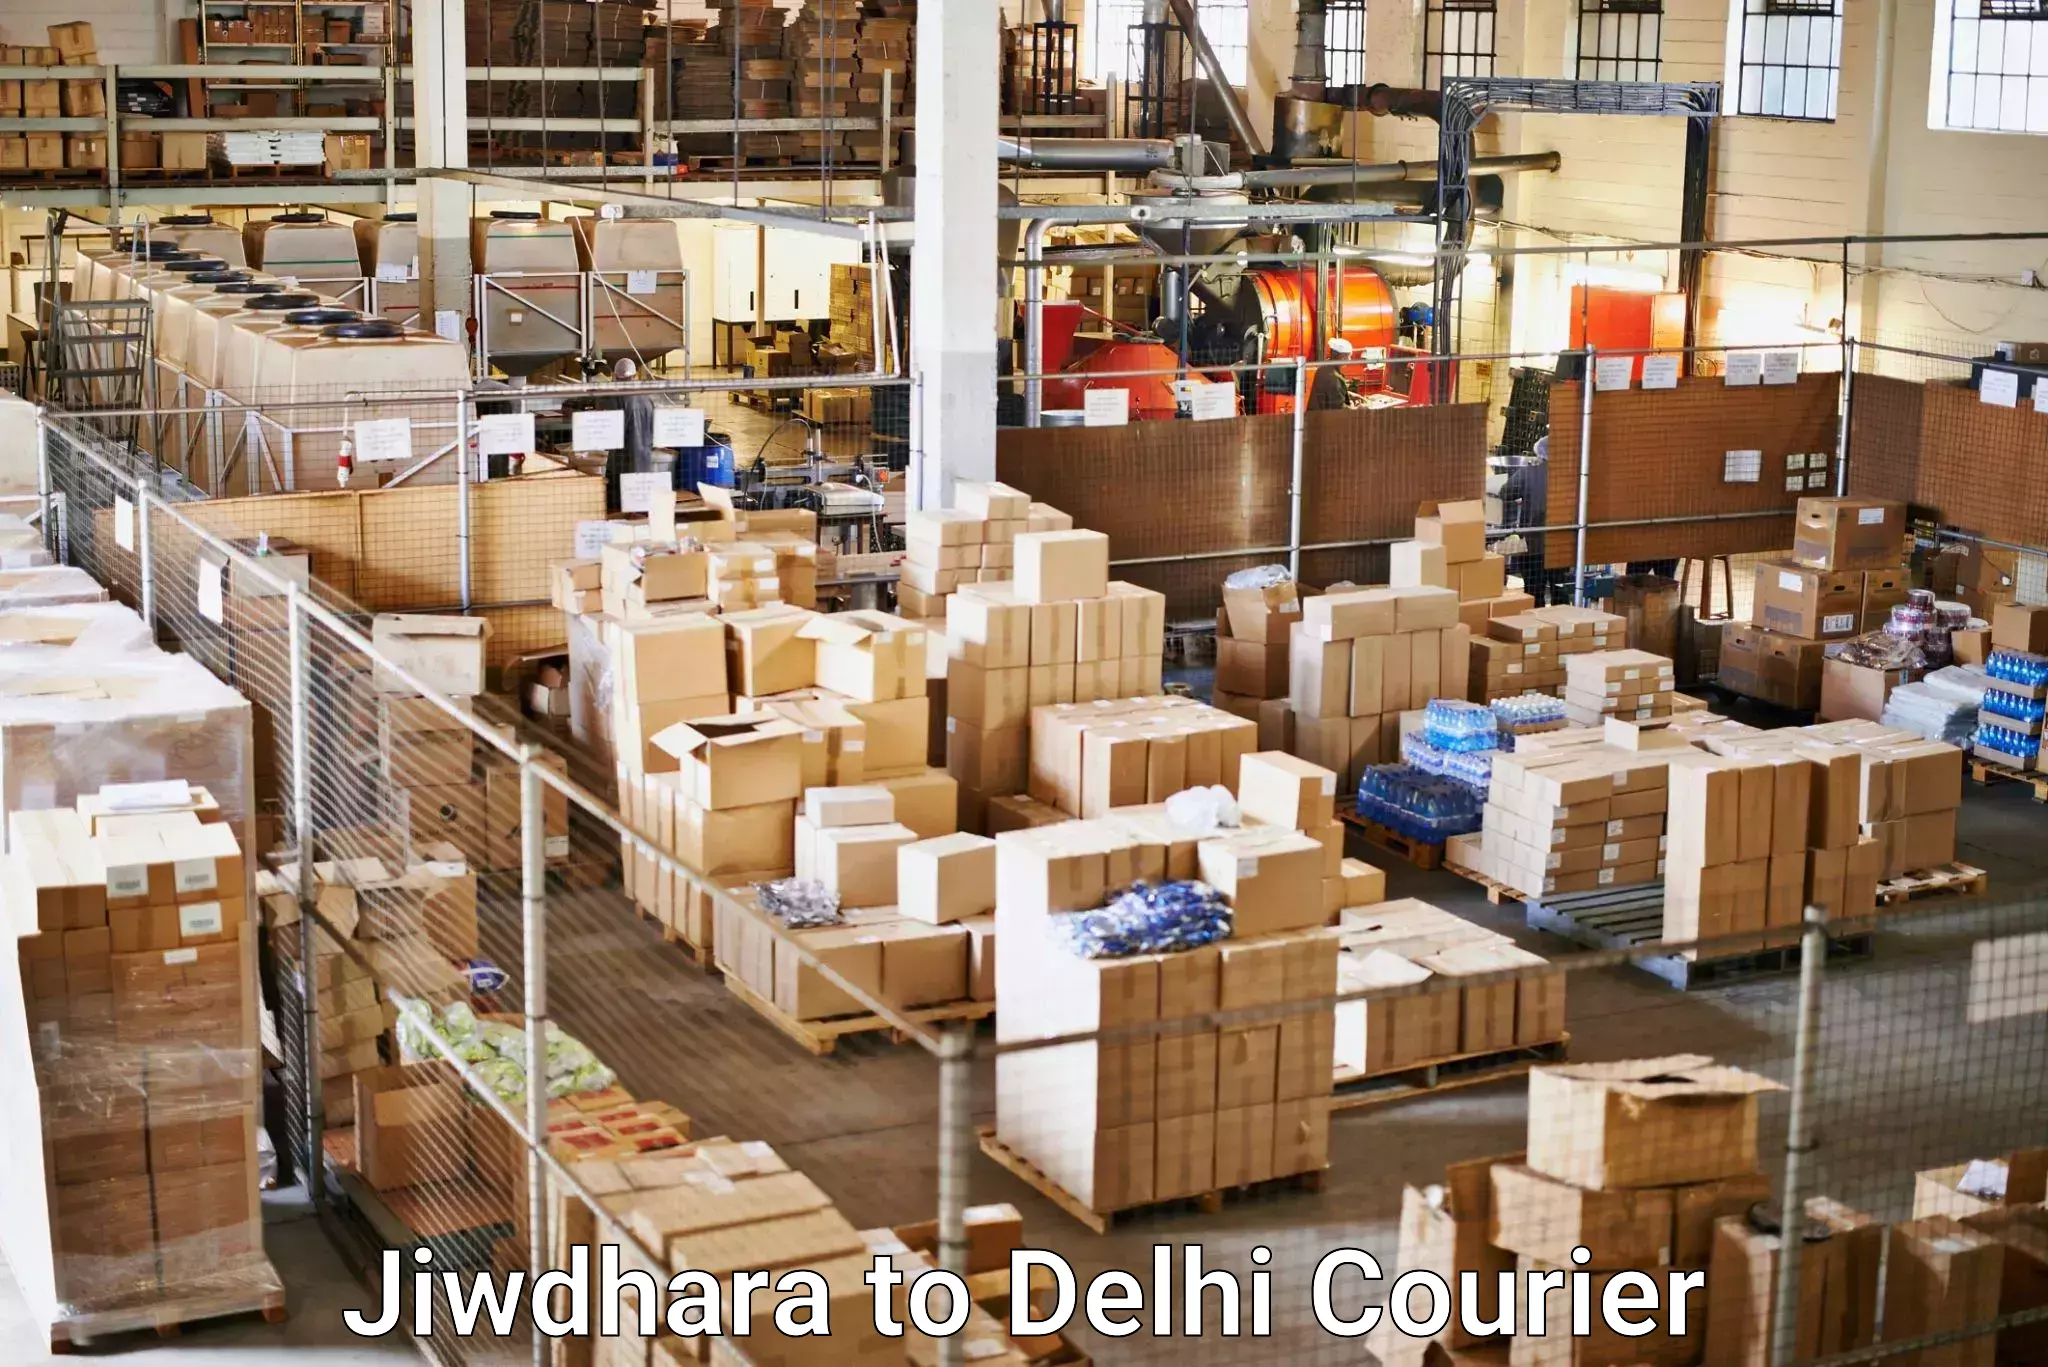 Reliable parcel services Jiwdhara to Jamia Millia Islamia New Delhi